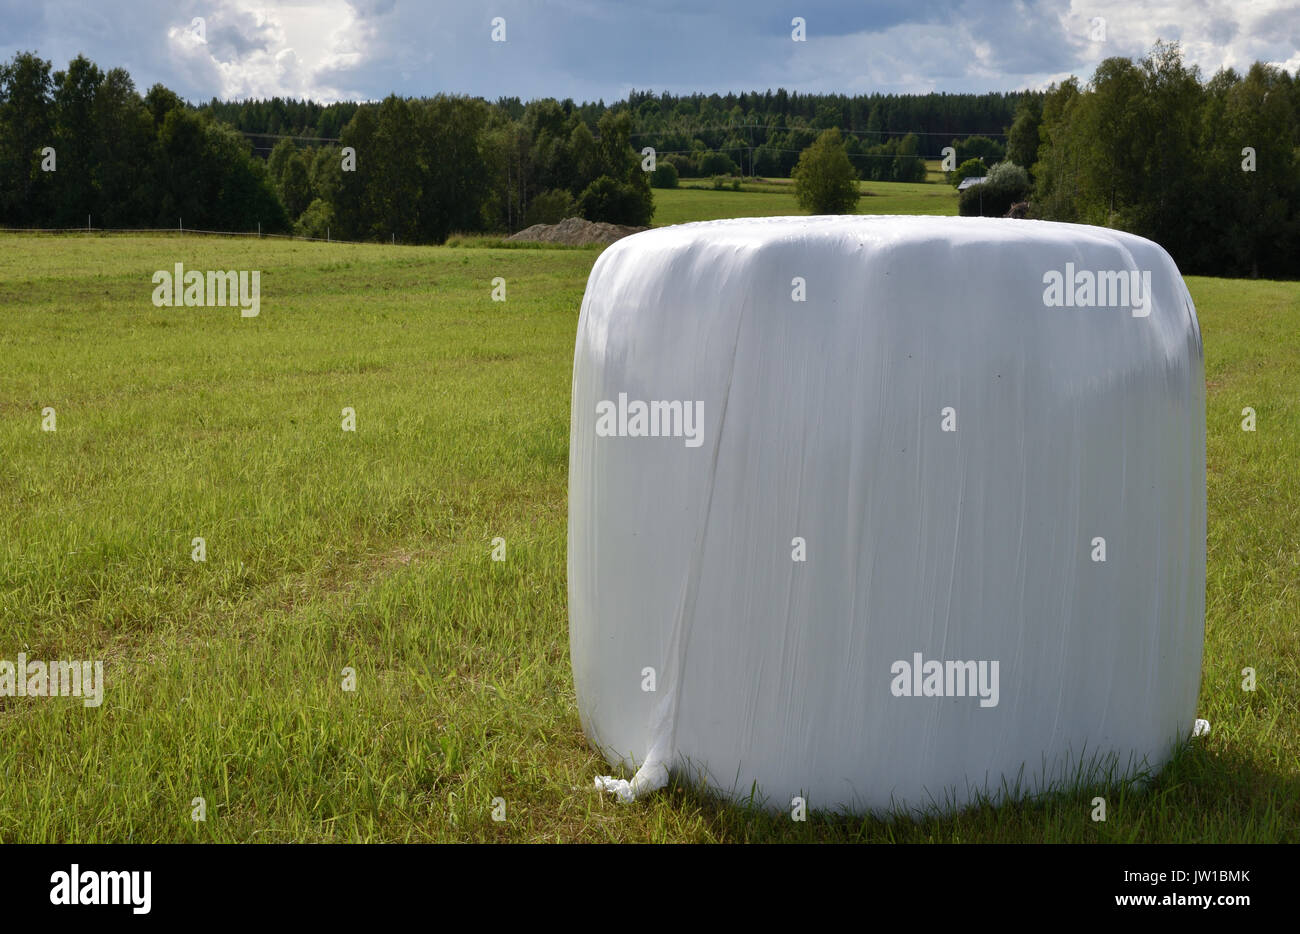 Single Einsilierung conservated in Kunststoff, stehend auf einem grünen Feld, Bild aus dem Norden von Schweden. Stockfoto